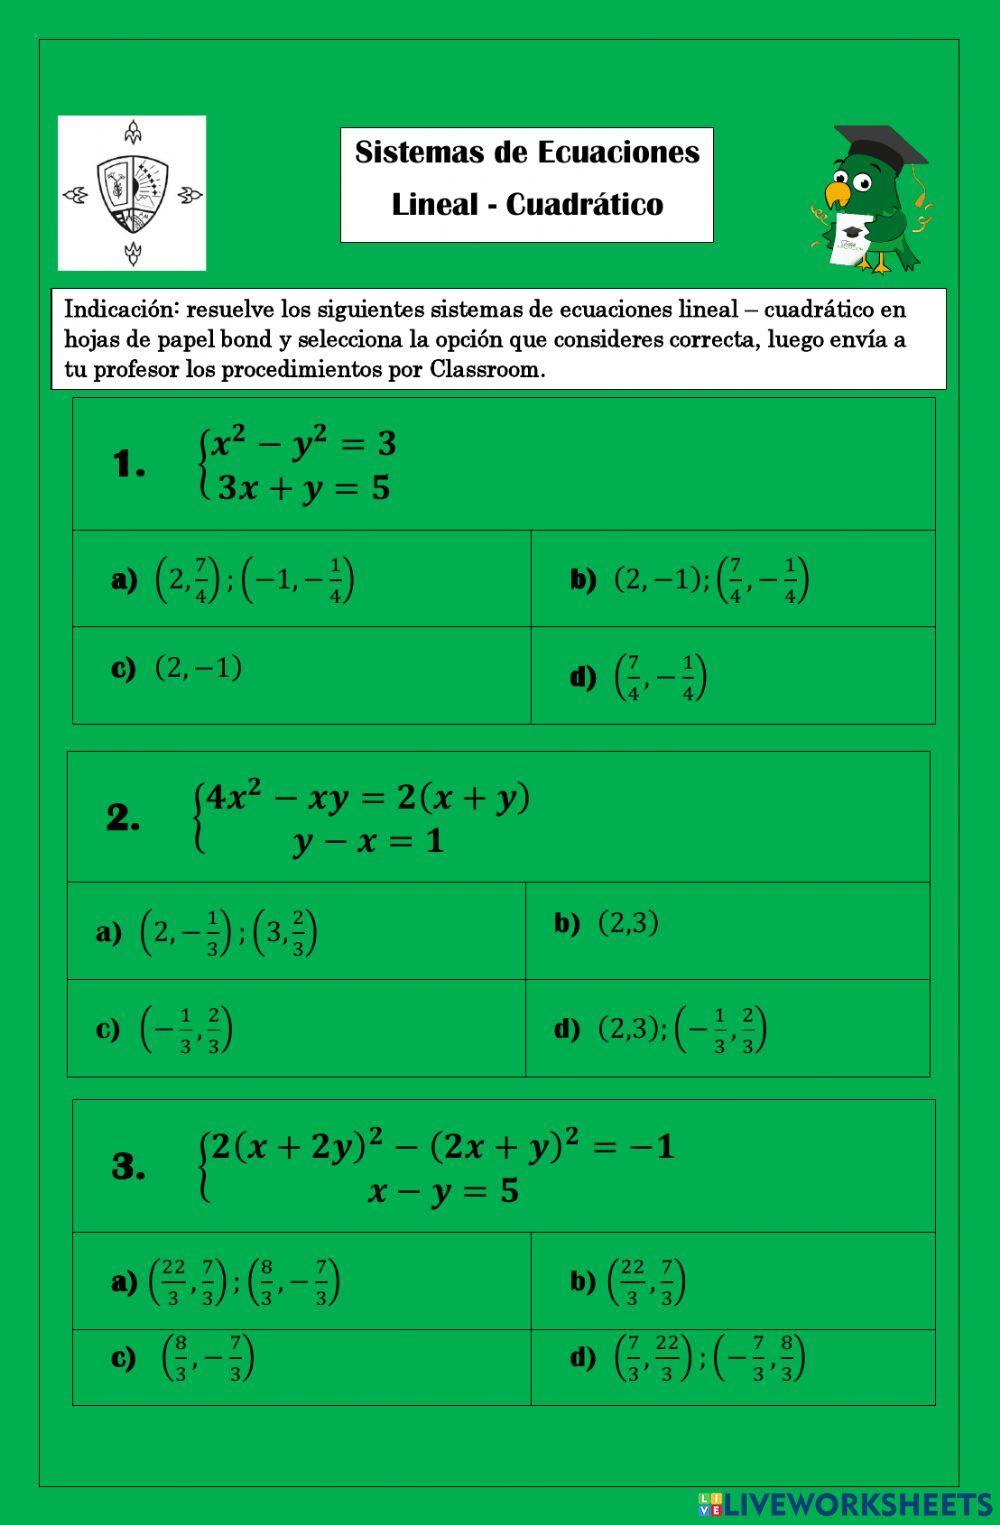 Sistemas de ecuaciones lineal - cuadrática